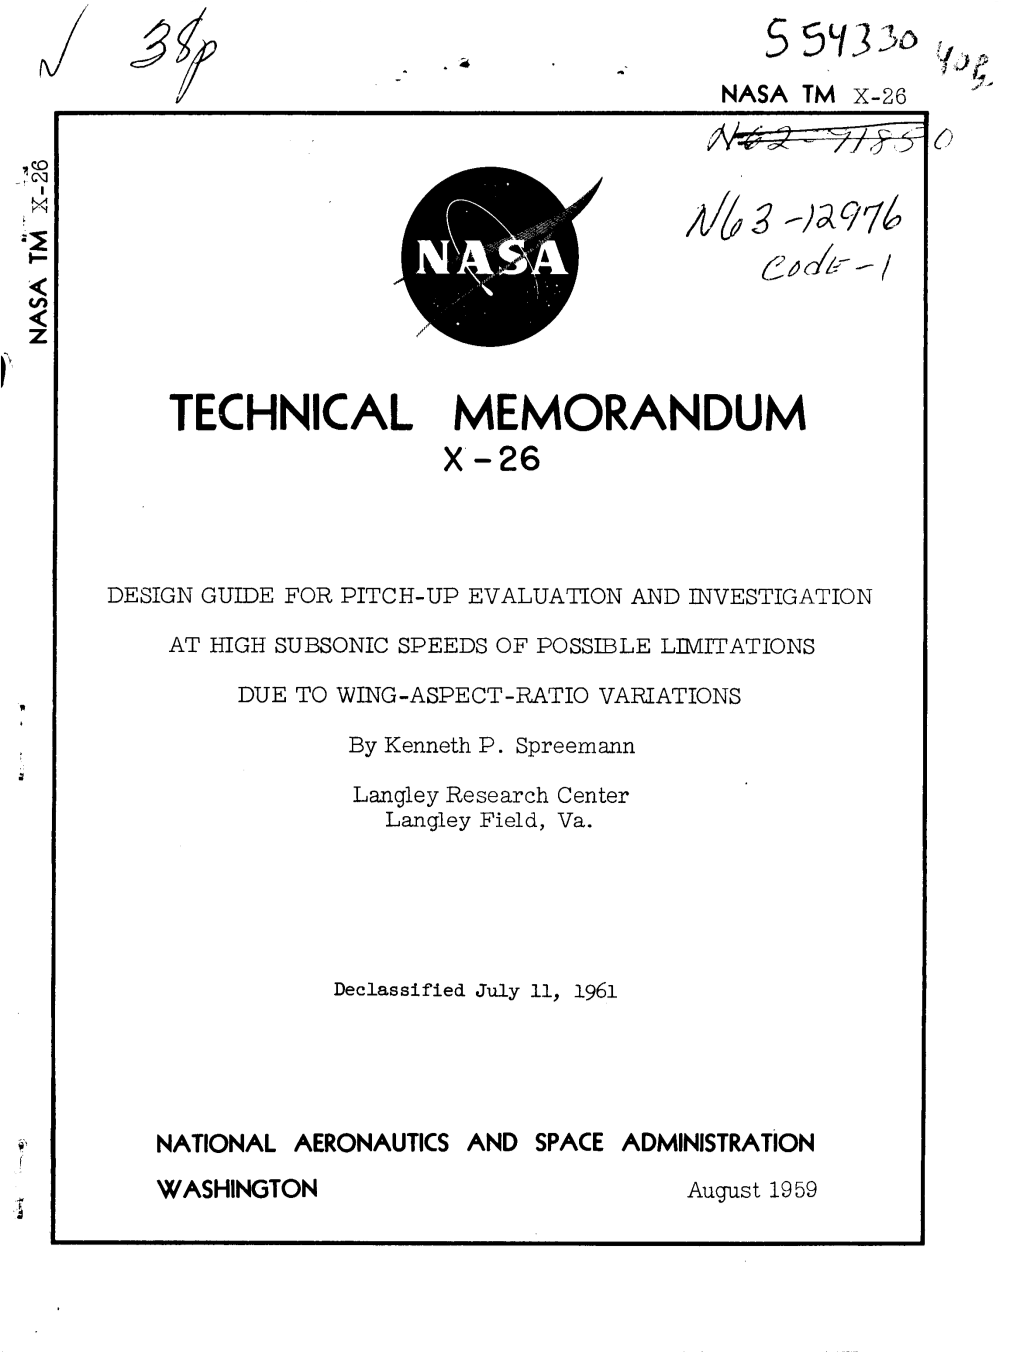 Technical Memorandum X-26